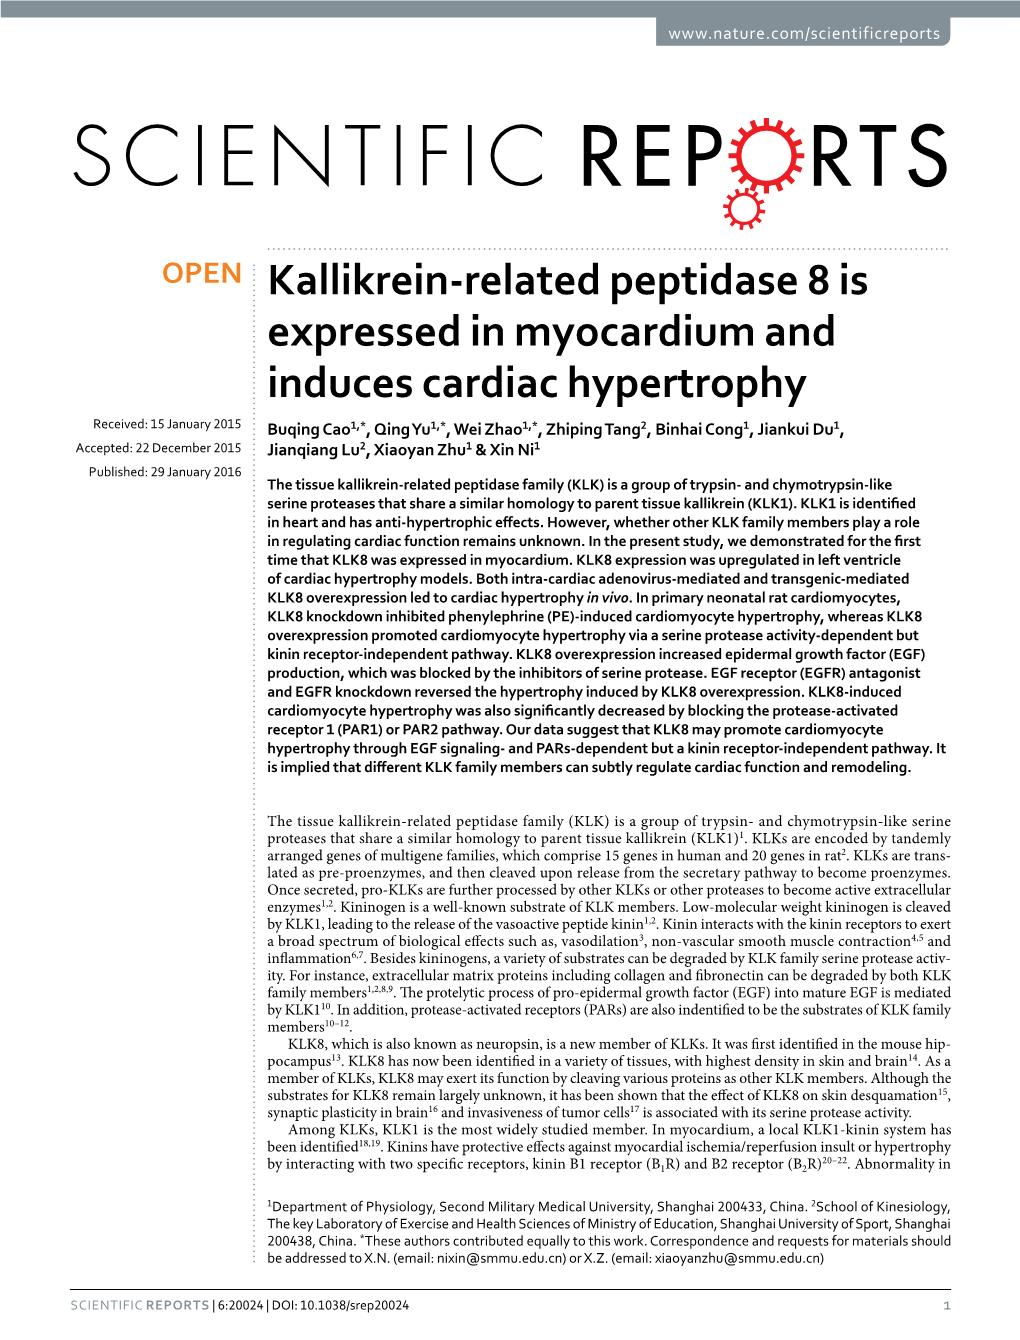 Kallikrein-Related Peptidase 8 Is Expressed in Myocardium